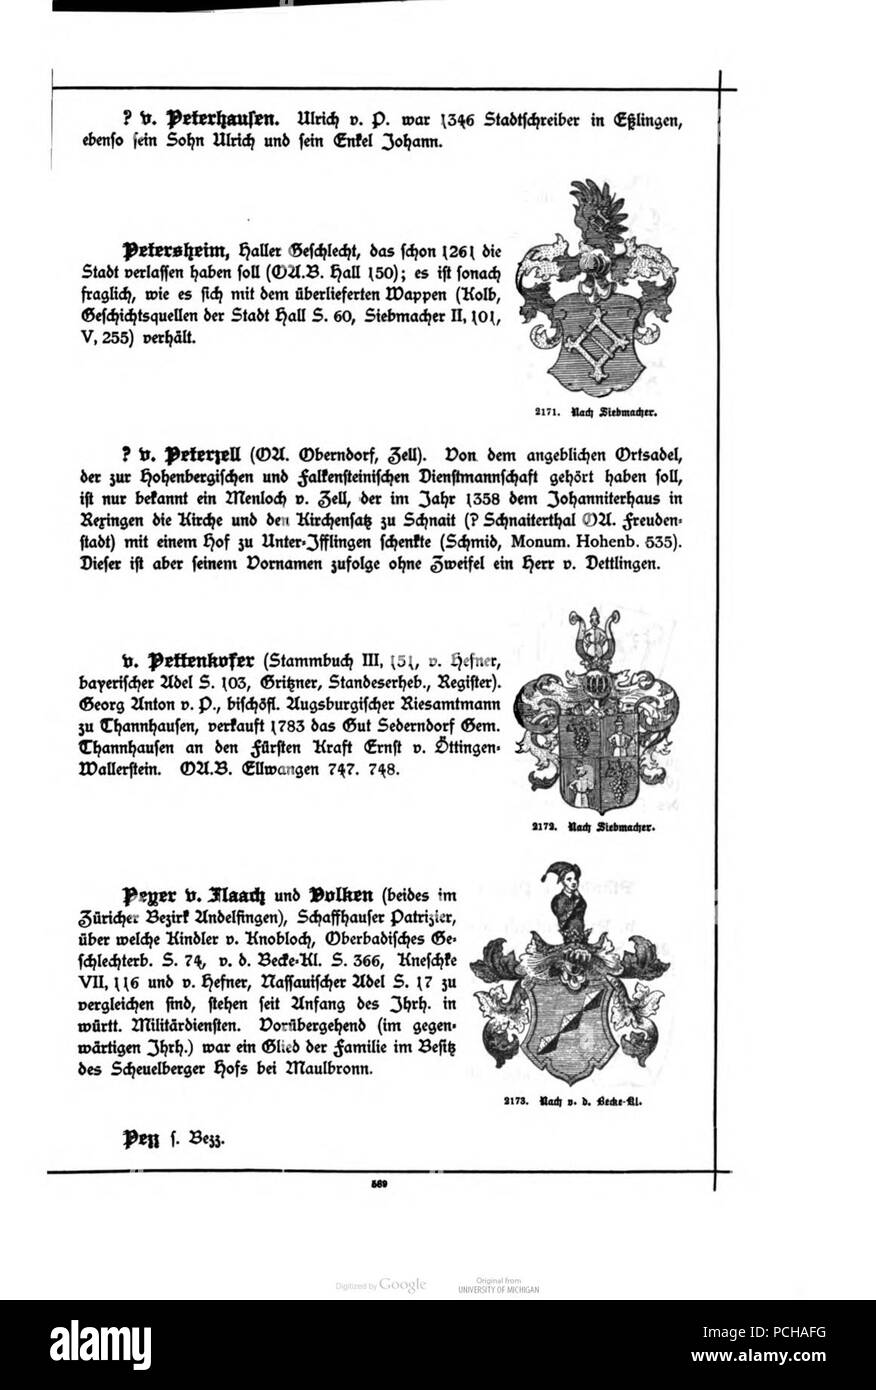 Alberti Wuerttembergisches Adels- und Wappenbuch 0589. Foto de stock